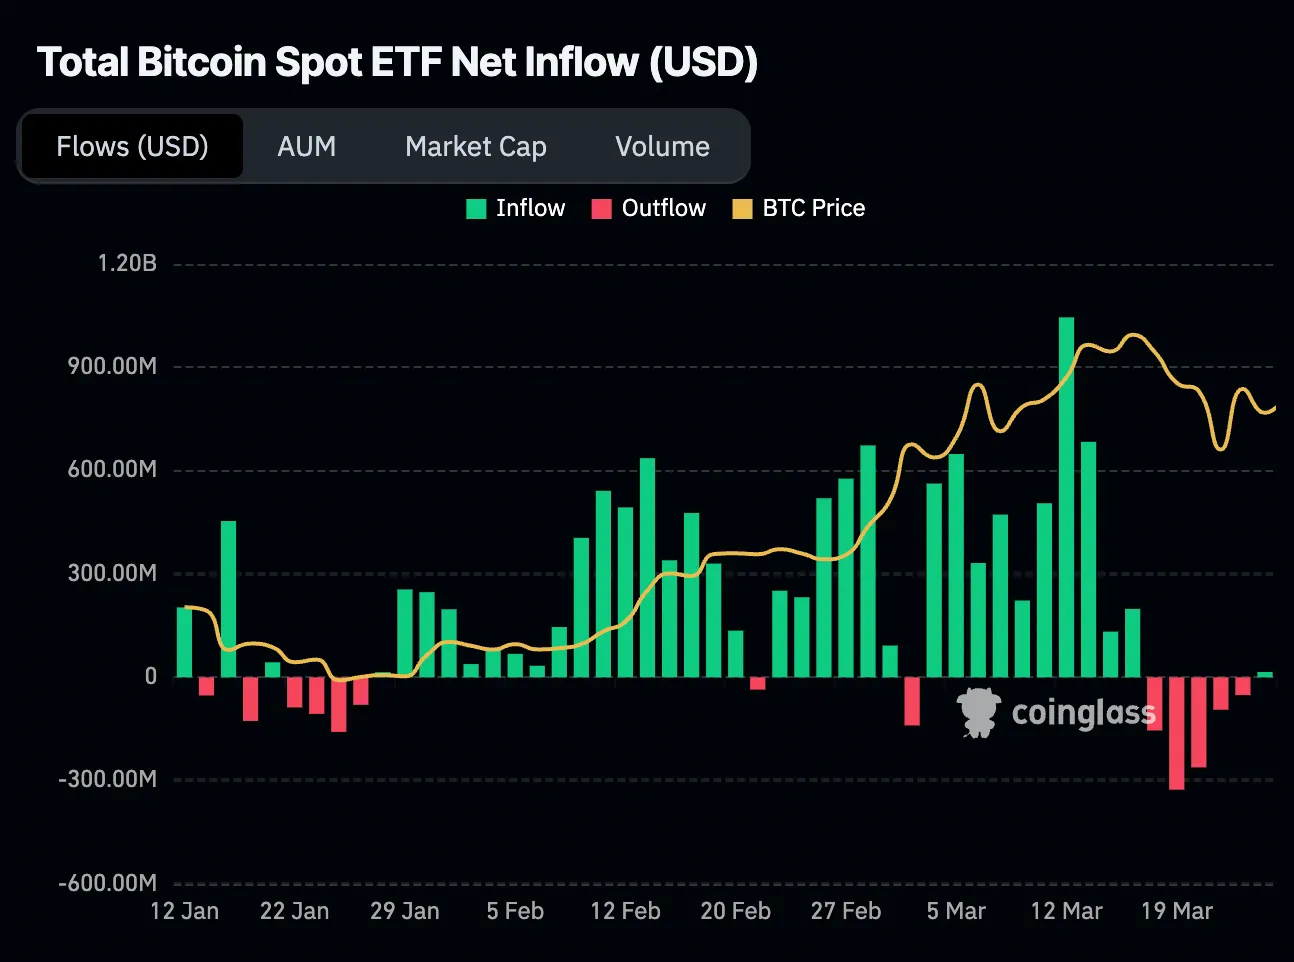 inversiones netas en USD del ETF spot de bitcoin